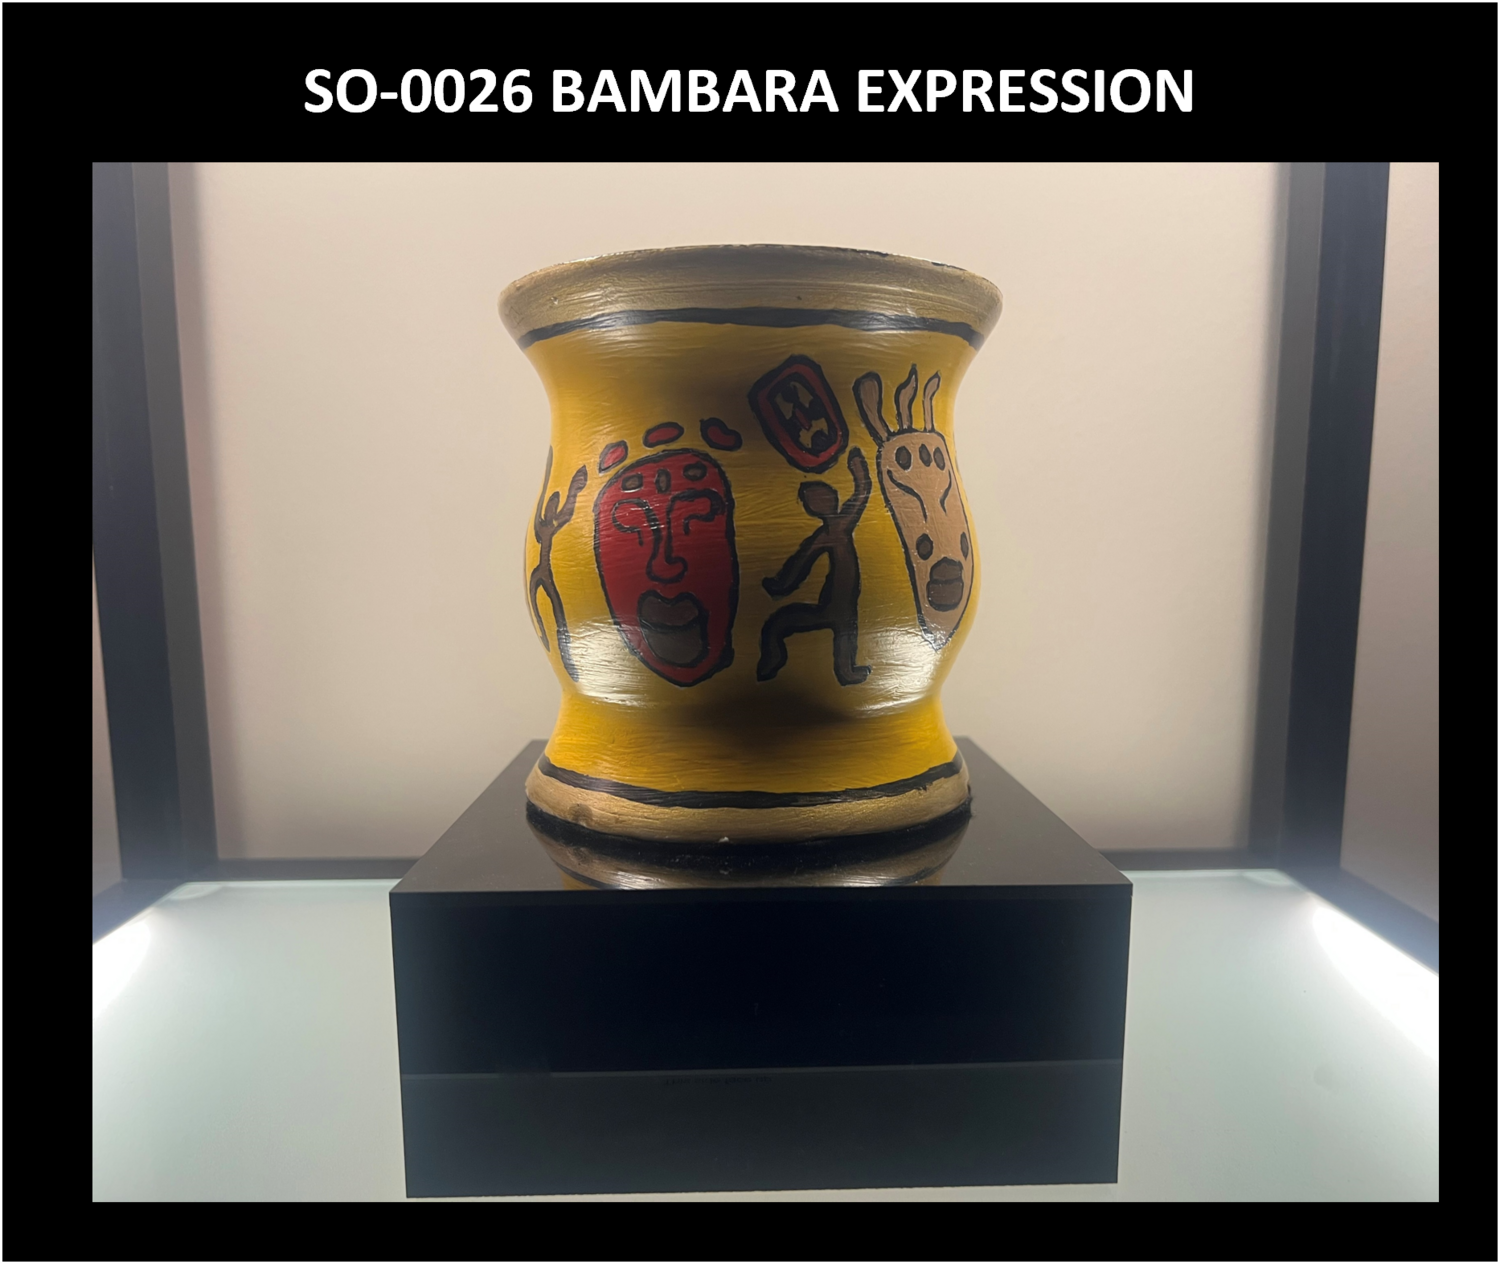 SO-0026 BAMBARA EXPRESSION